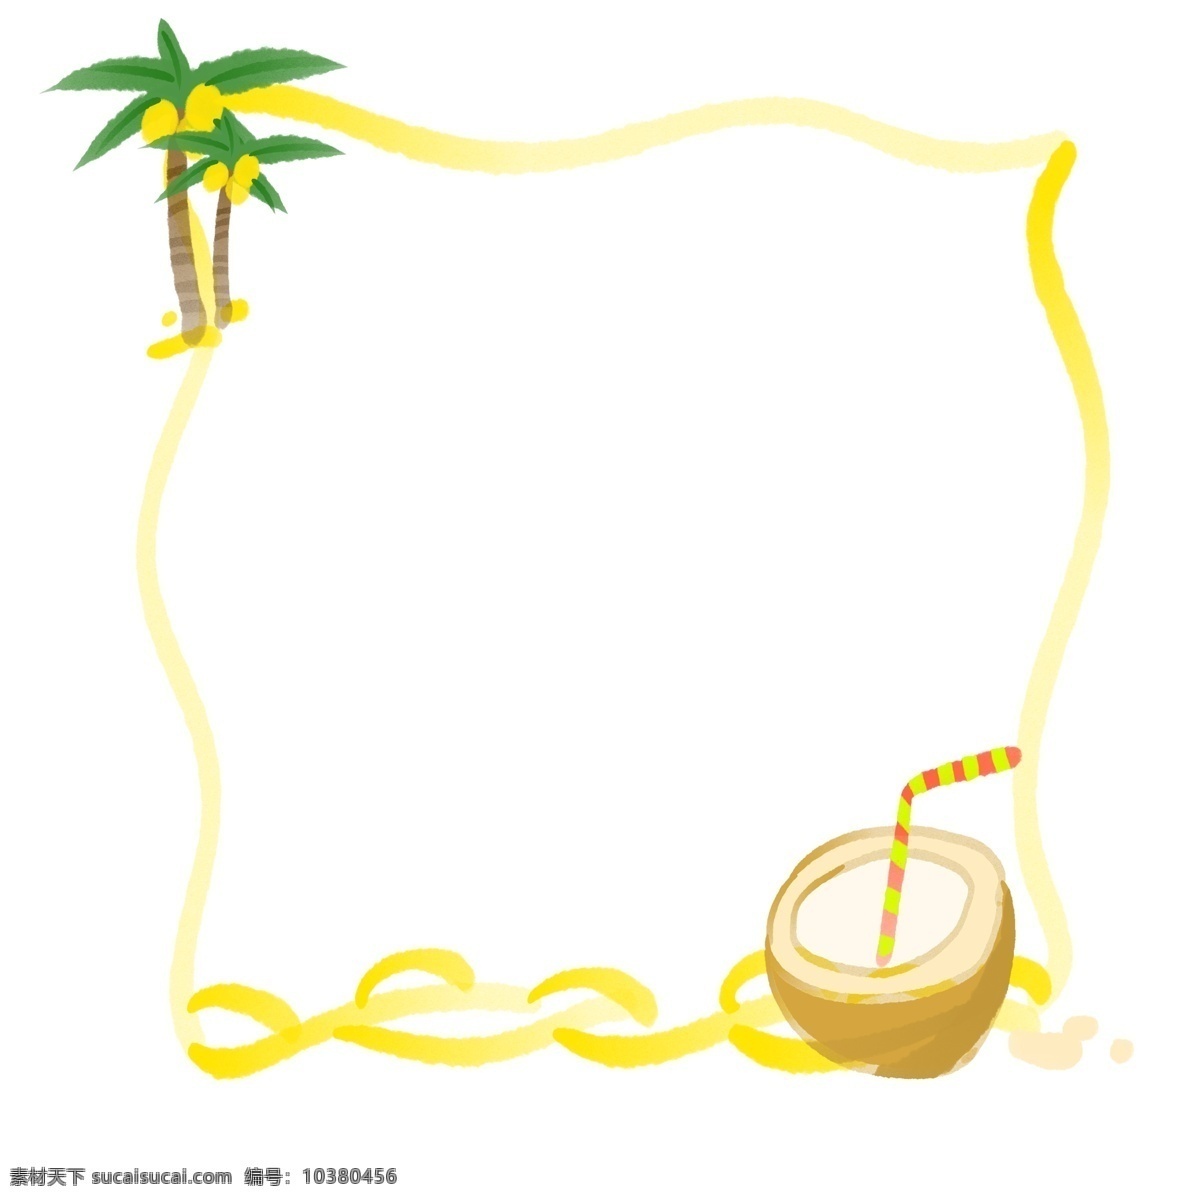 水果 椰 汁 椰树 边框 椰汁边框 卡通黄色边框 植物椰树插画 方形边框 水果椰汁边框 可爱边框